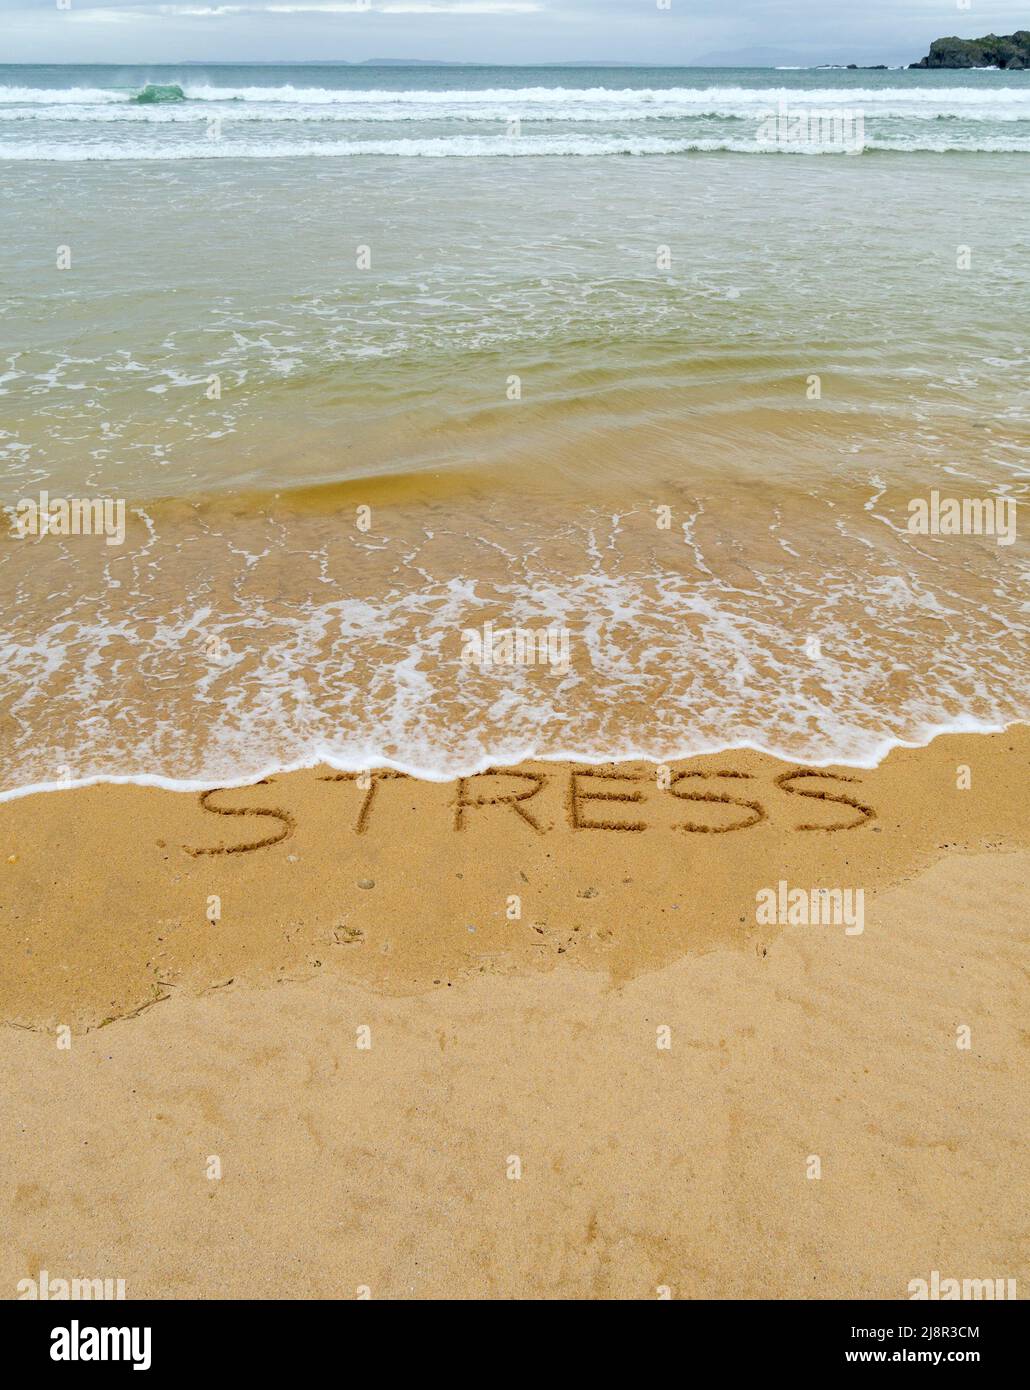 Konzeptbild - um den Stress abzuwaschen, indem man einen Urlaub macht, während die Wellen an einem Sandstrand das Wort „Stress“, das in Sand geschrieben ist, wegspülen. Stockfoto